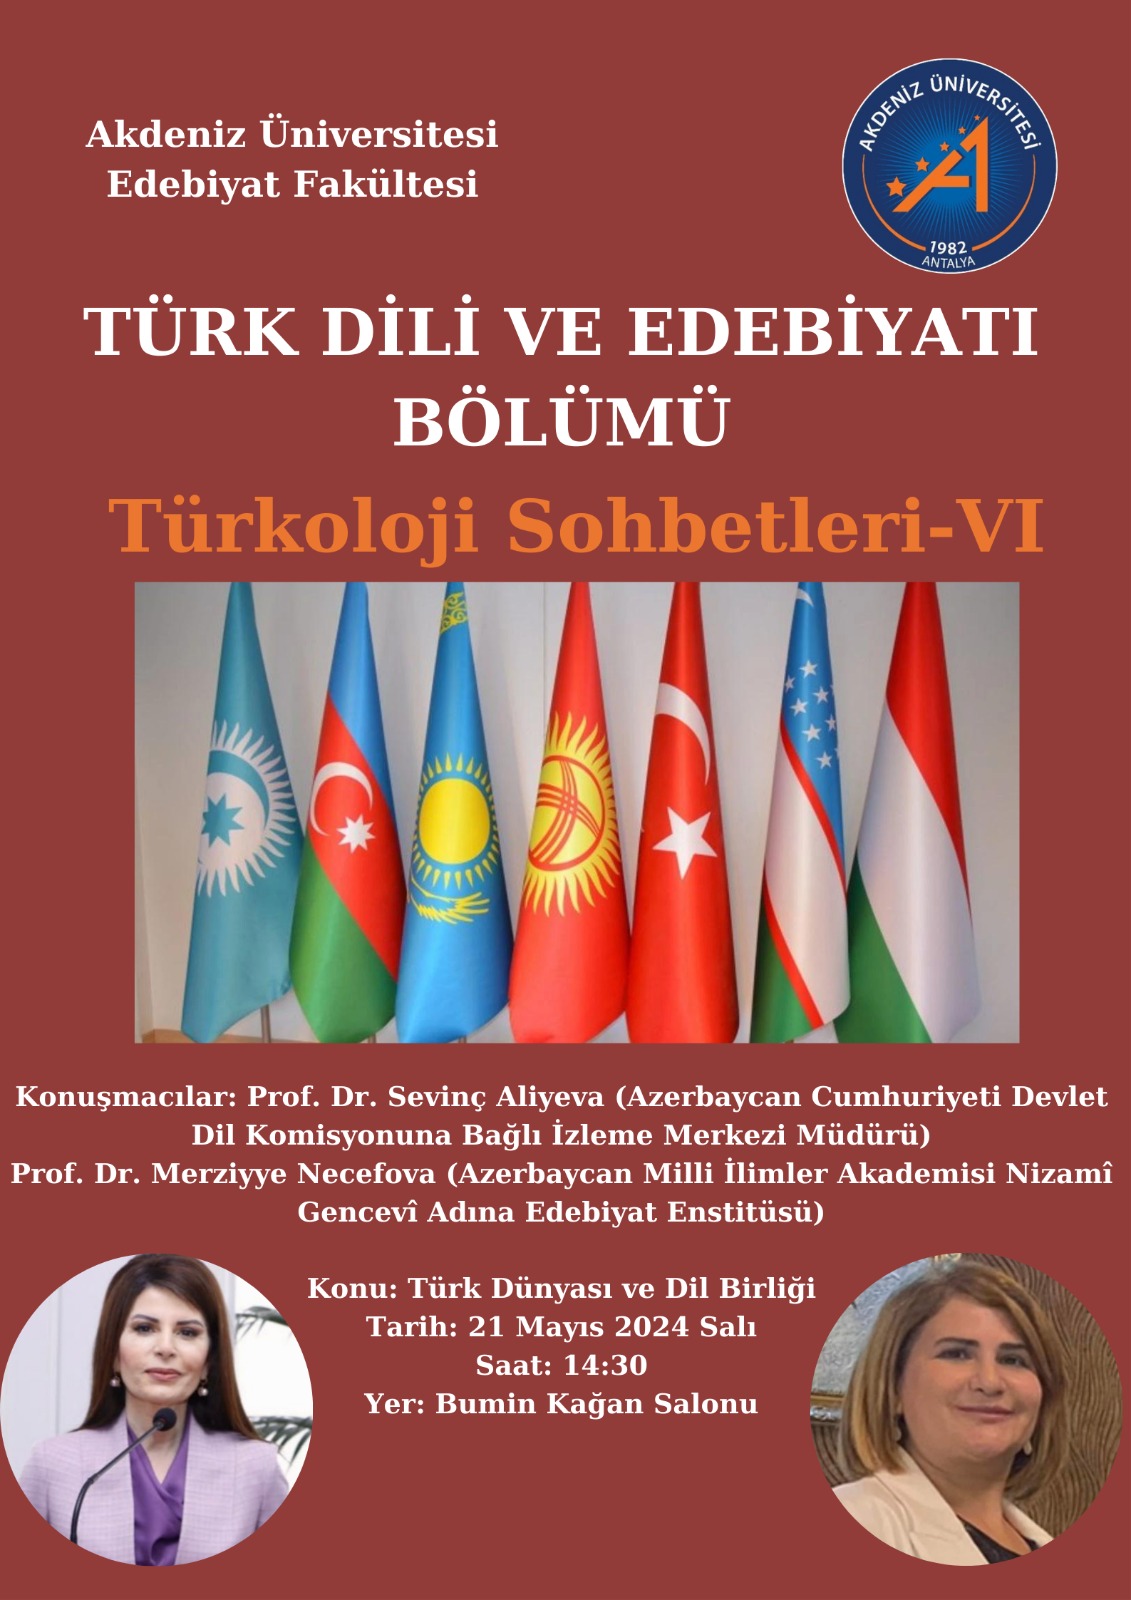 Edebiyat Fakültesi'nde "Türk Dünyası ve Dil Birliği" söyleşisi